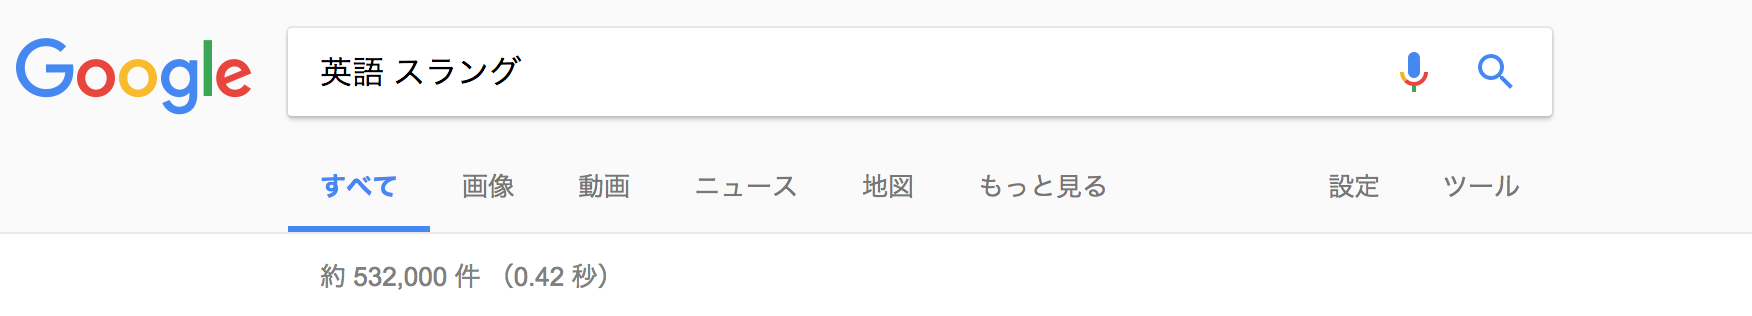 日本語スラングを英語で解説してる記事がシュール過ぎた Nexseed Blog